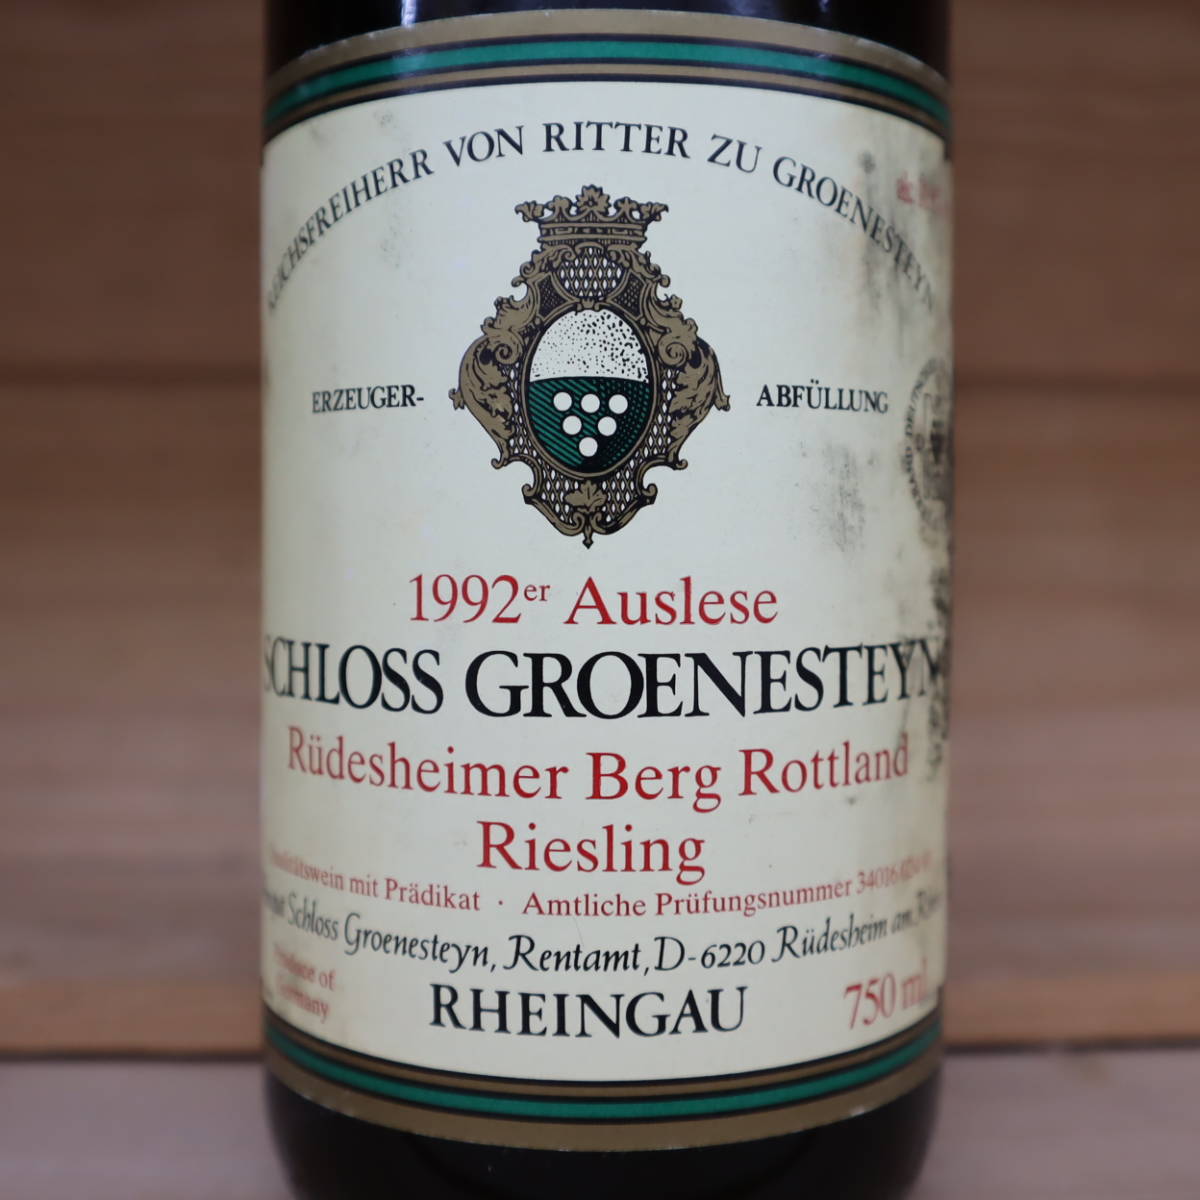 1992年 シュロス・グレーネシュタイン ルデシェイマー・ベルク・ロットランド リースリング アウスレーゼ 返品可能 輸入伏見ワイン